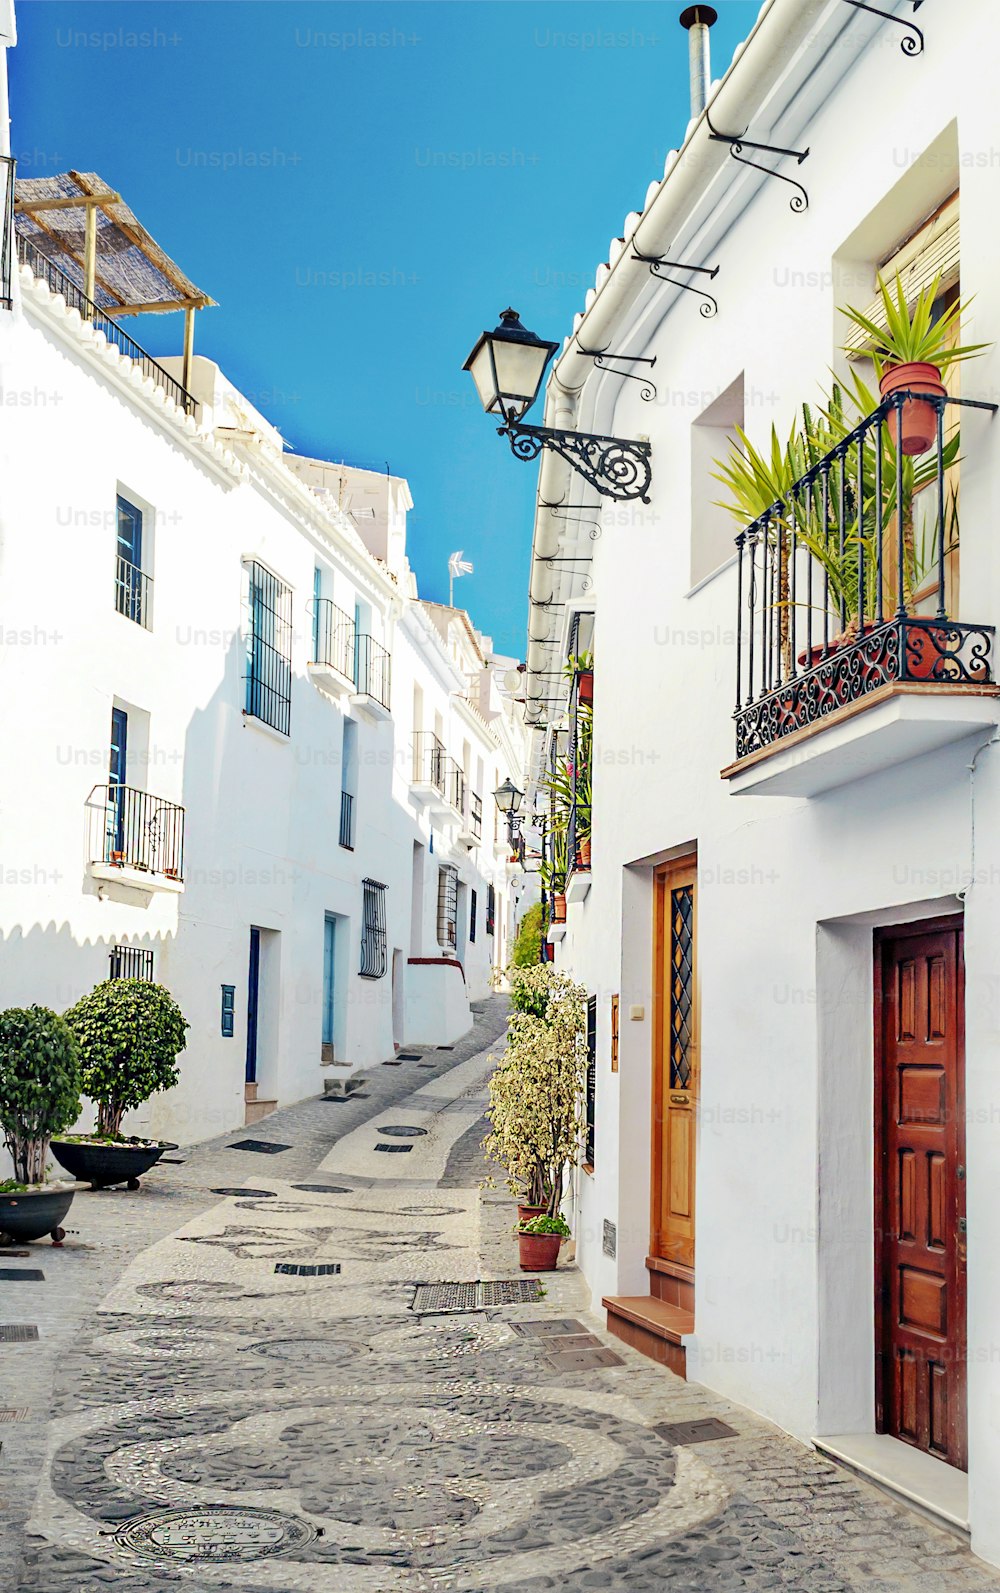 Calle de murallas blancas en un pueblo de Andalucía llamado Frigiliana